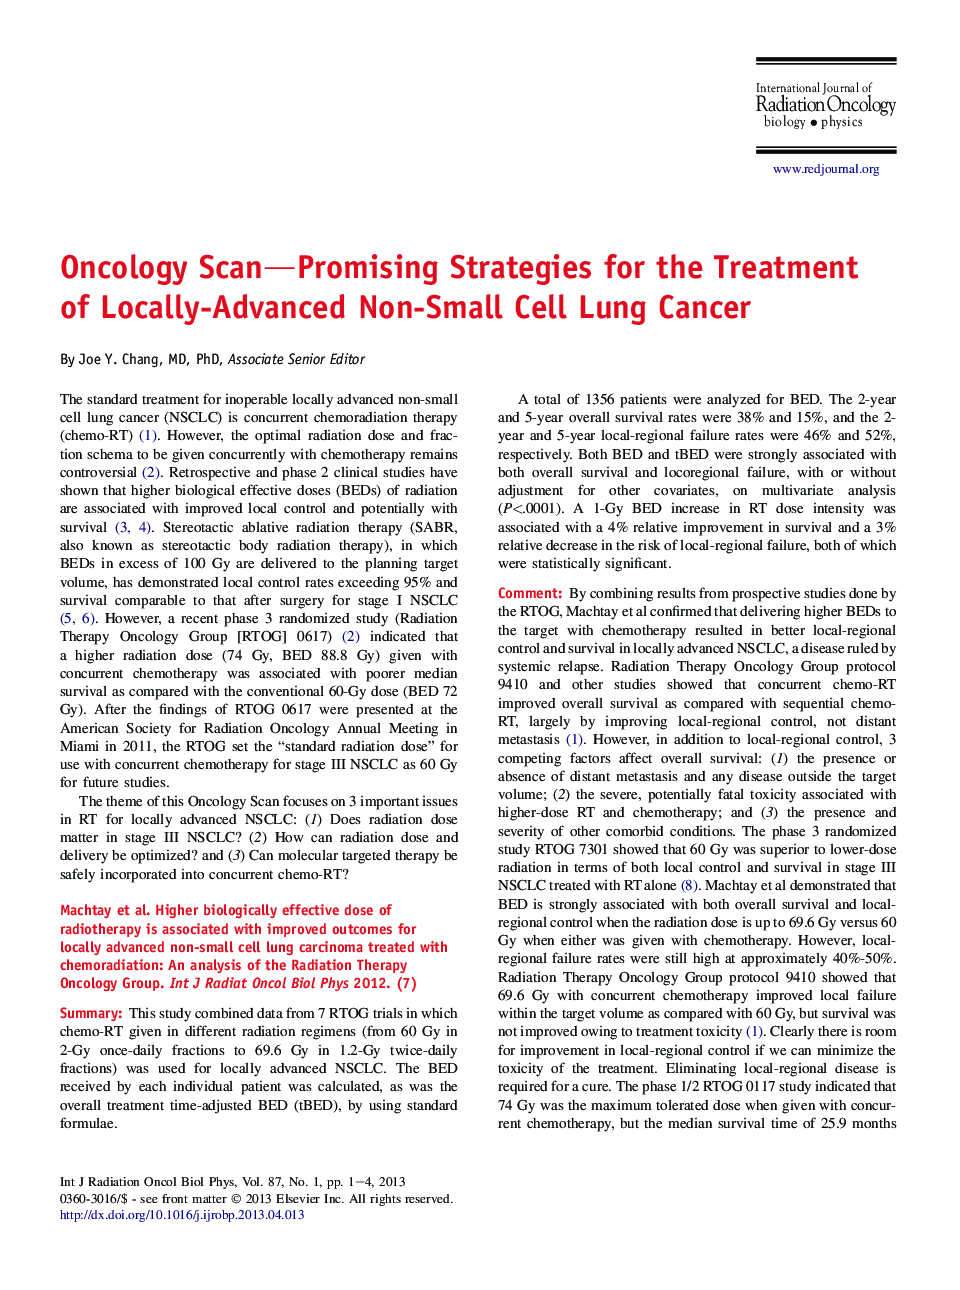 استراتژی های سرنوشت ساز انکولوژی برای درمان سرطان ریه های غیر سلولی محلی پیشرفته 